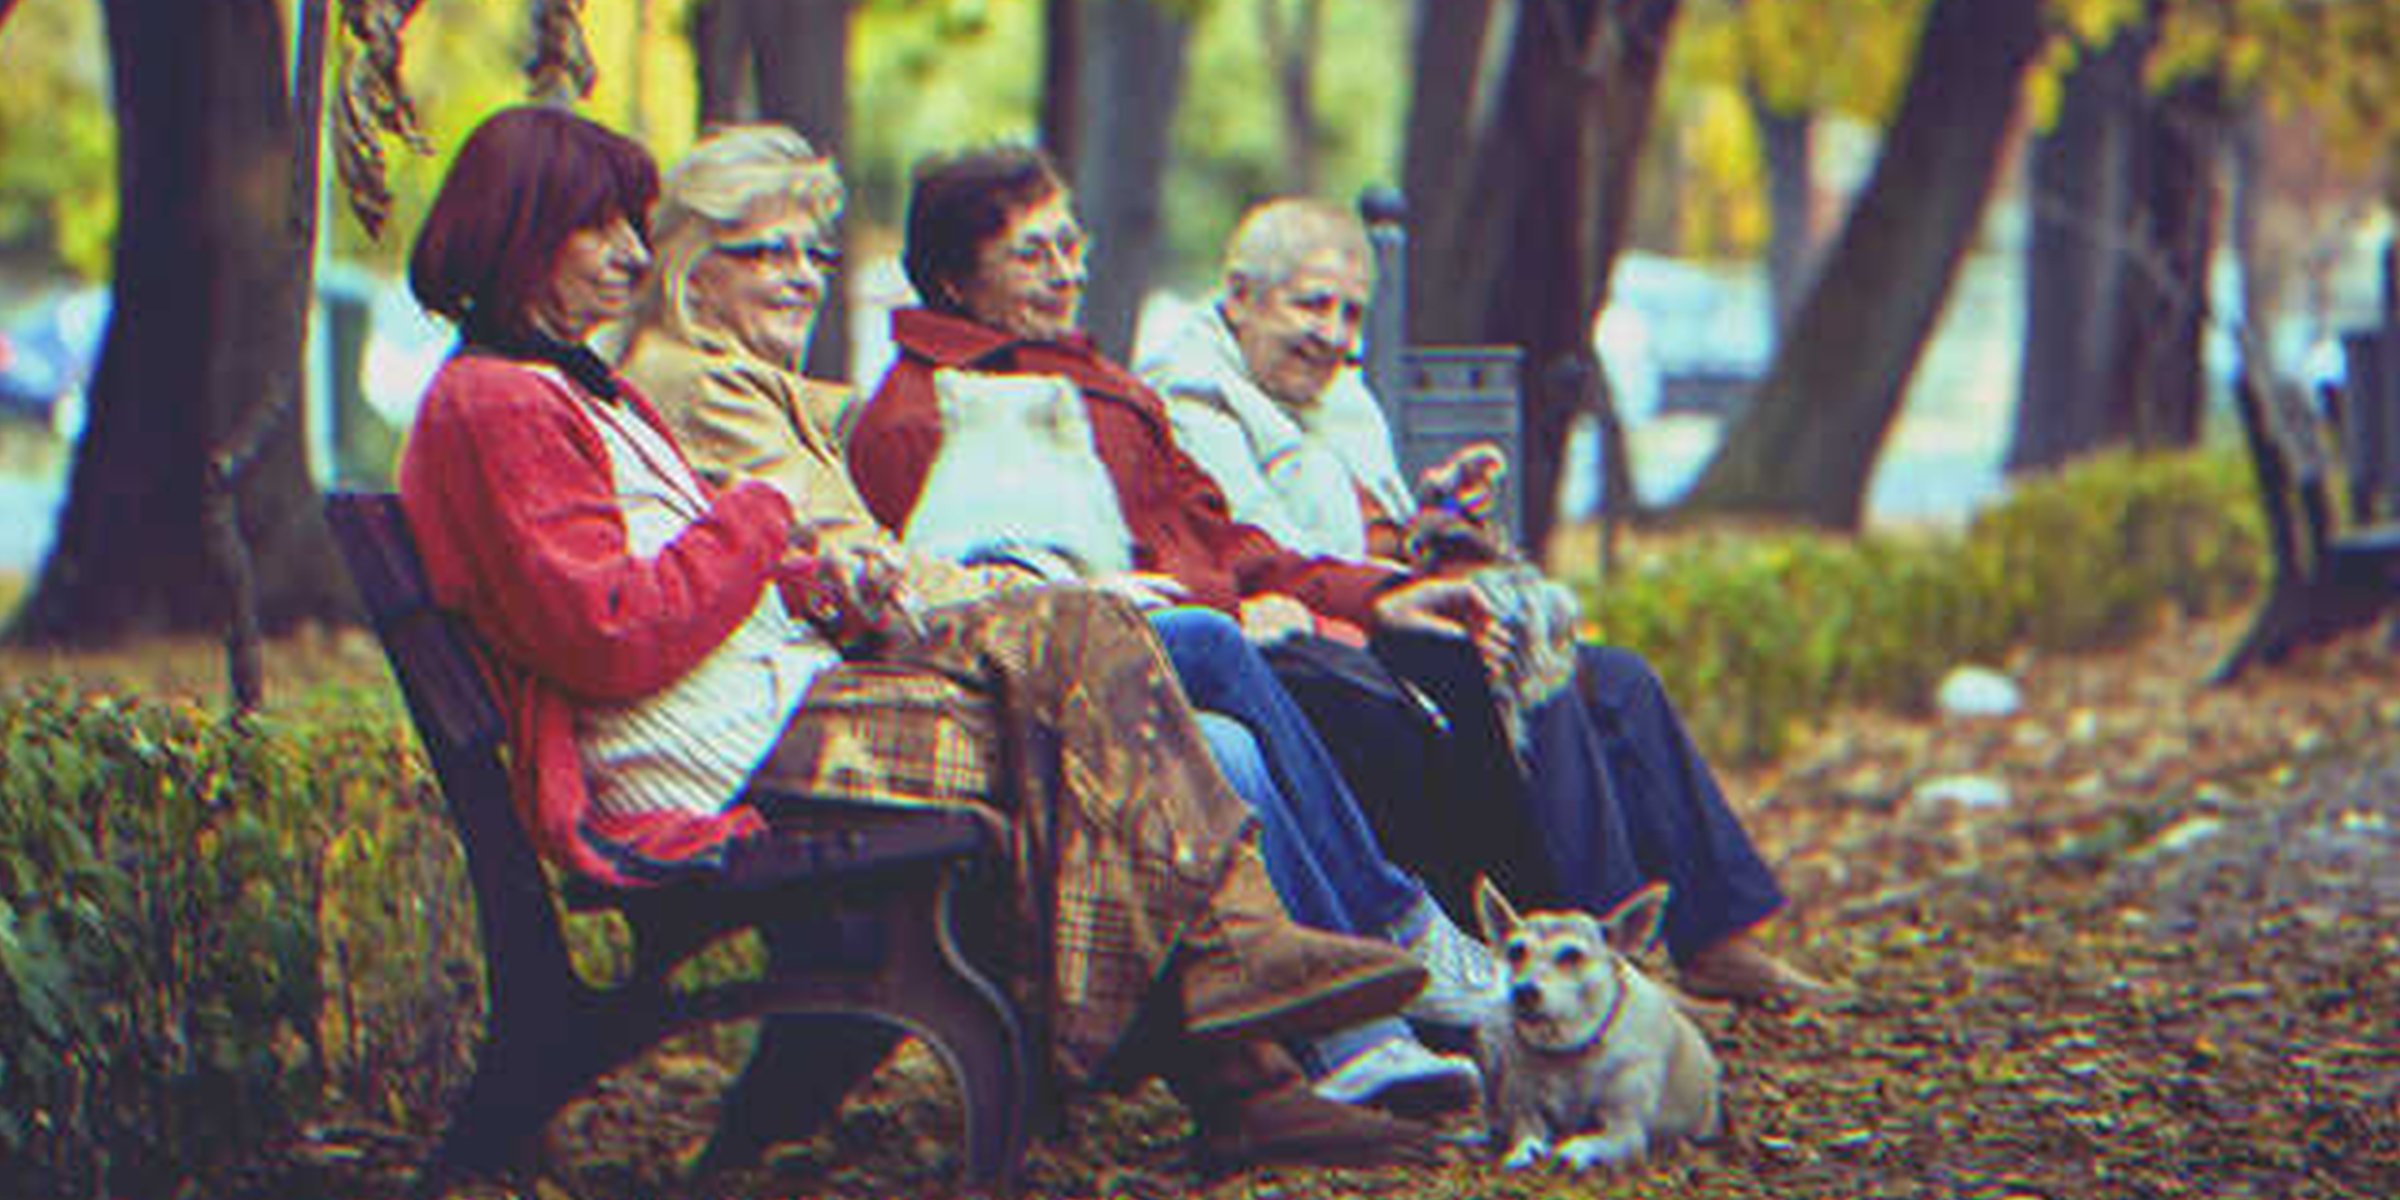 4 mujeres sentadas en un banco de plaza | Foto: Shutterstock